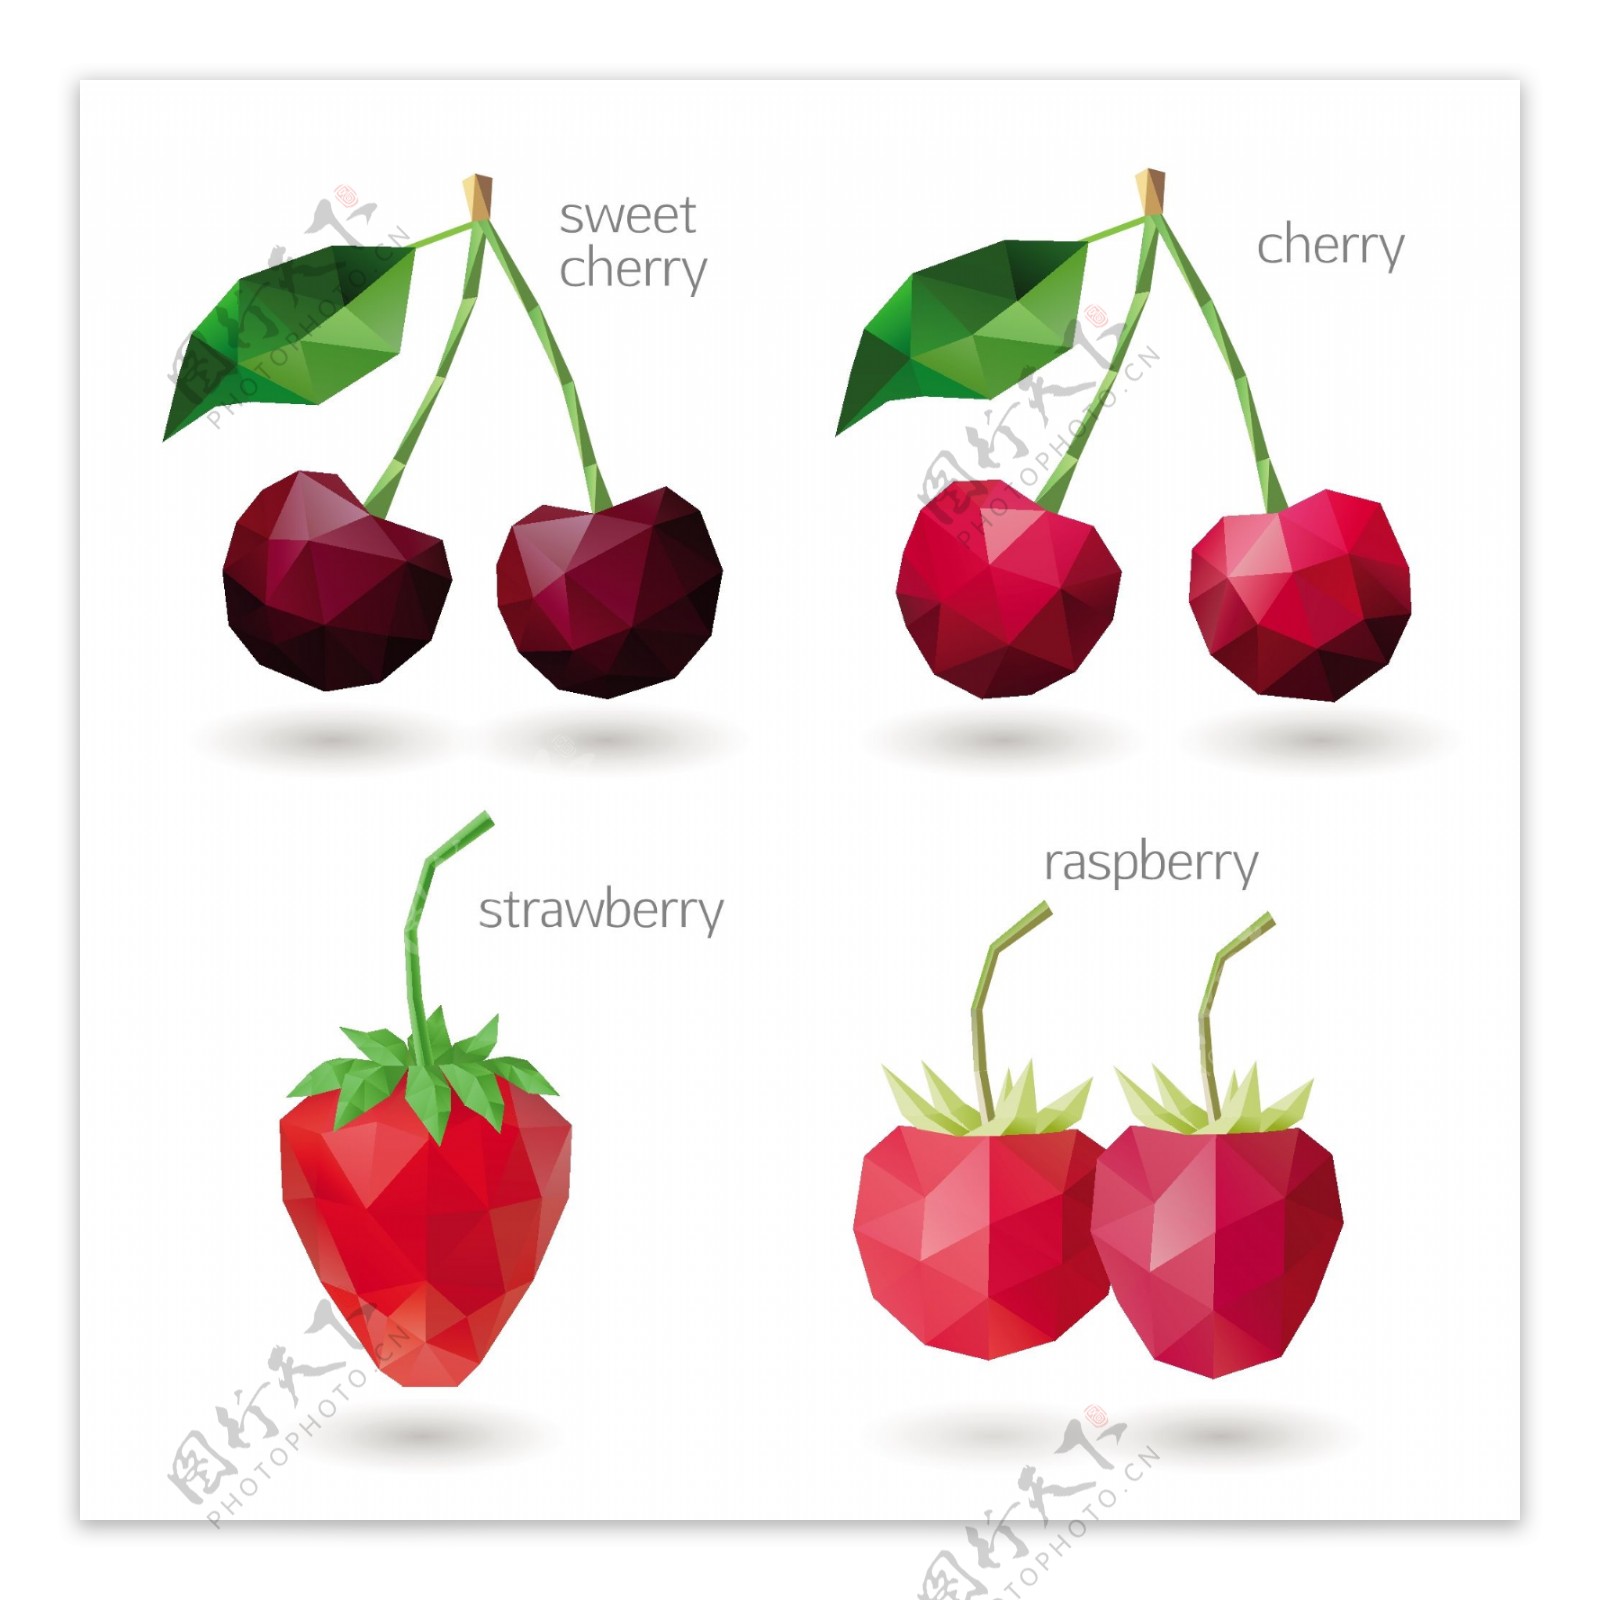 低面设计4款莓果